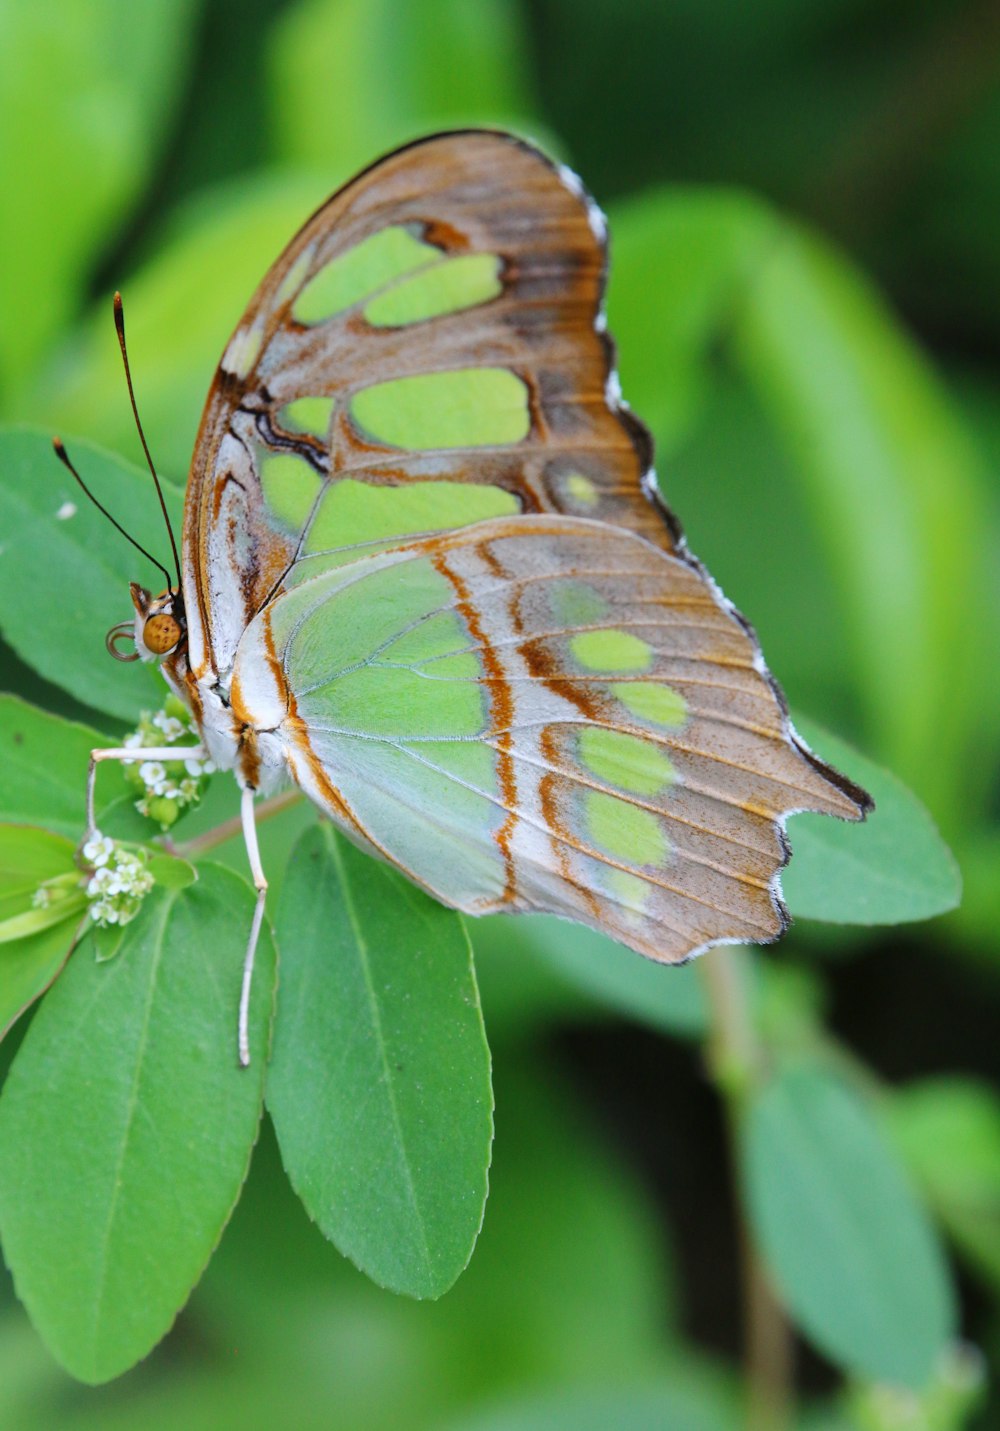 녹색 잎 위에 앉아 있는 갈색과 흰색 나비